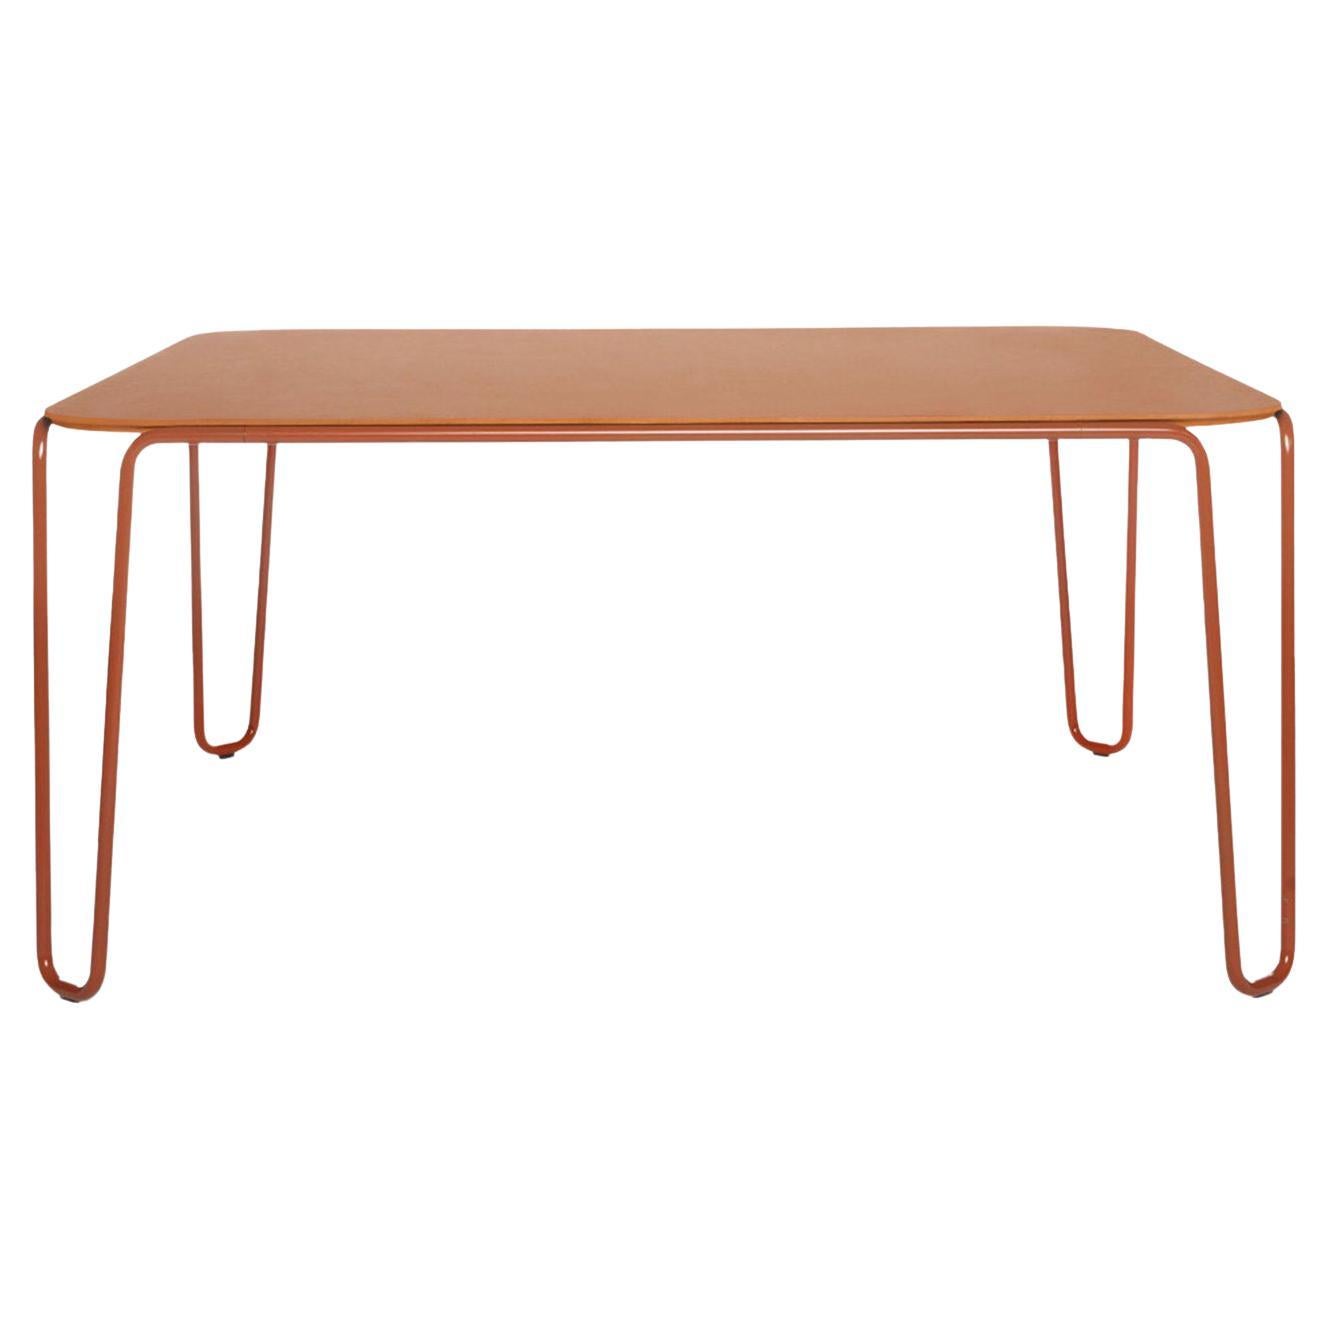 First Orange Square Table by Baldessari & Baldessari For Sale